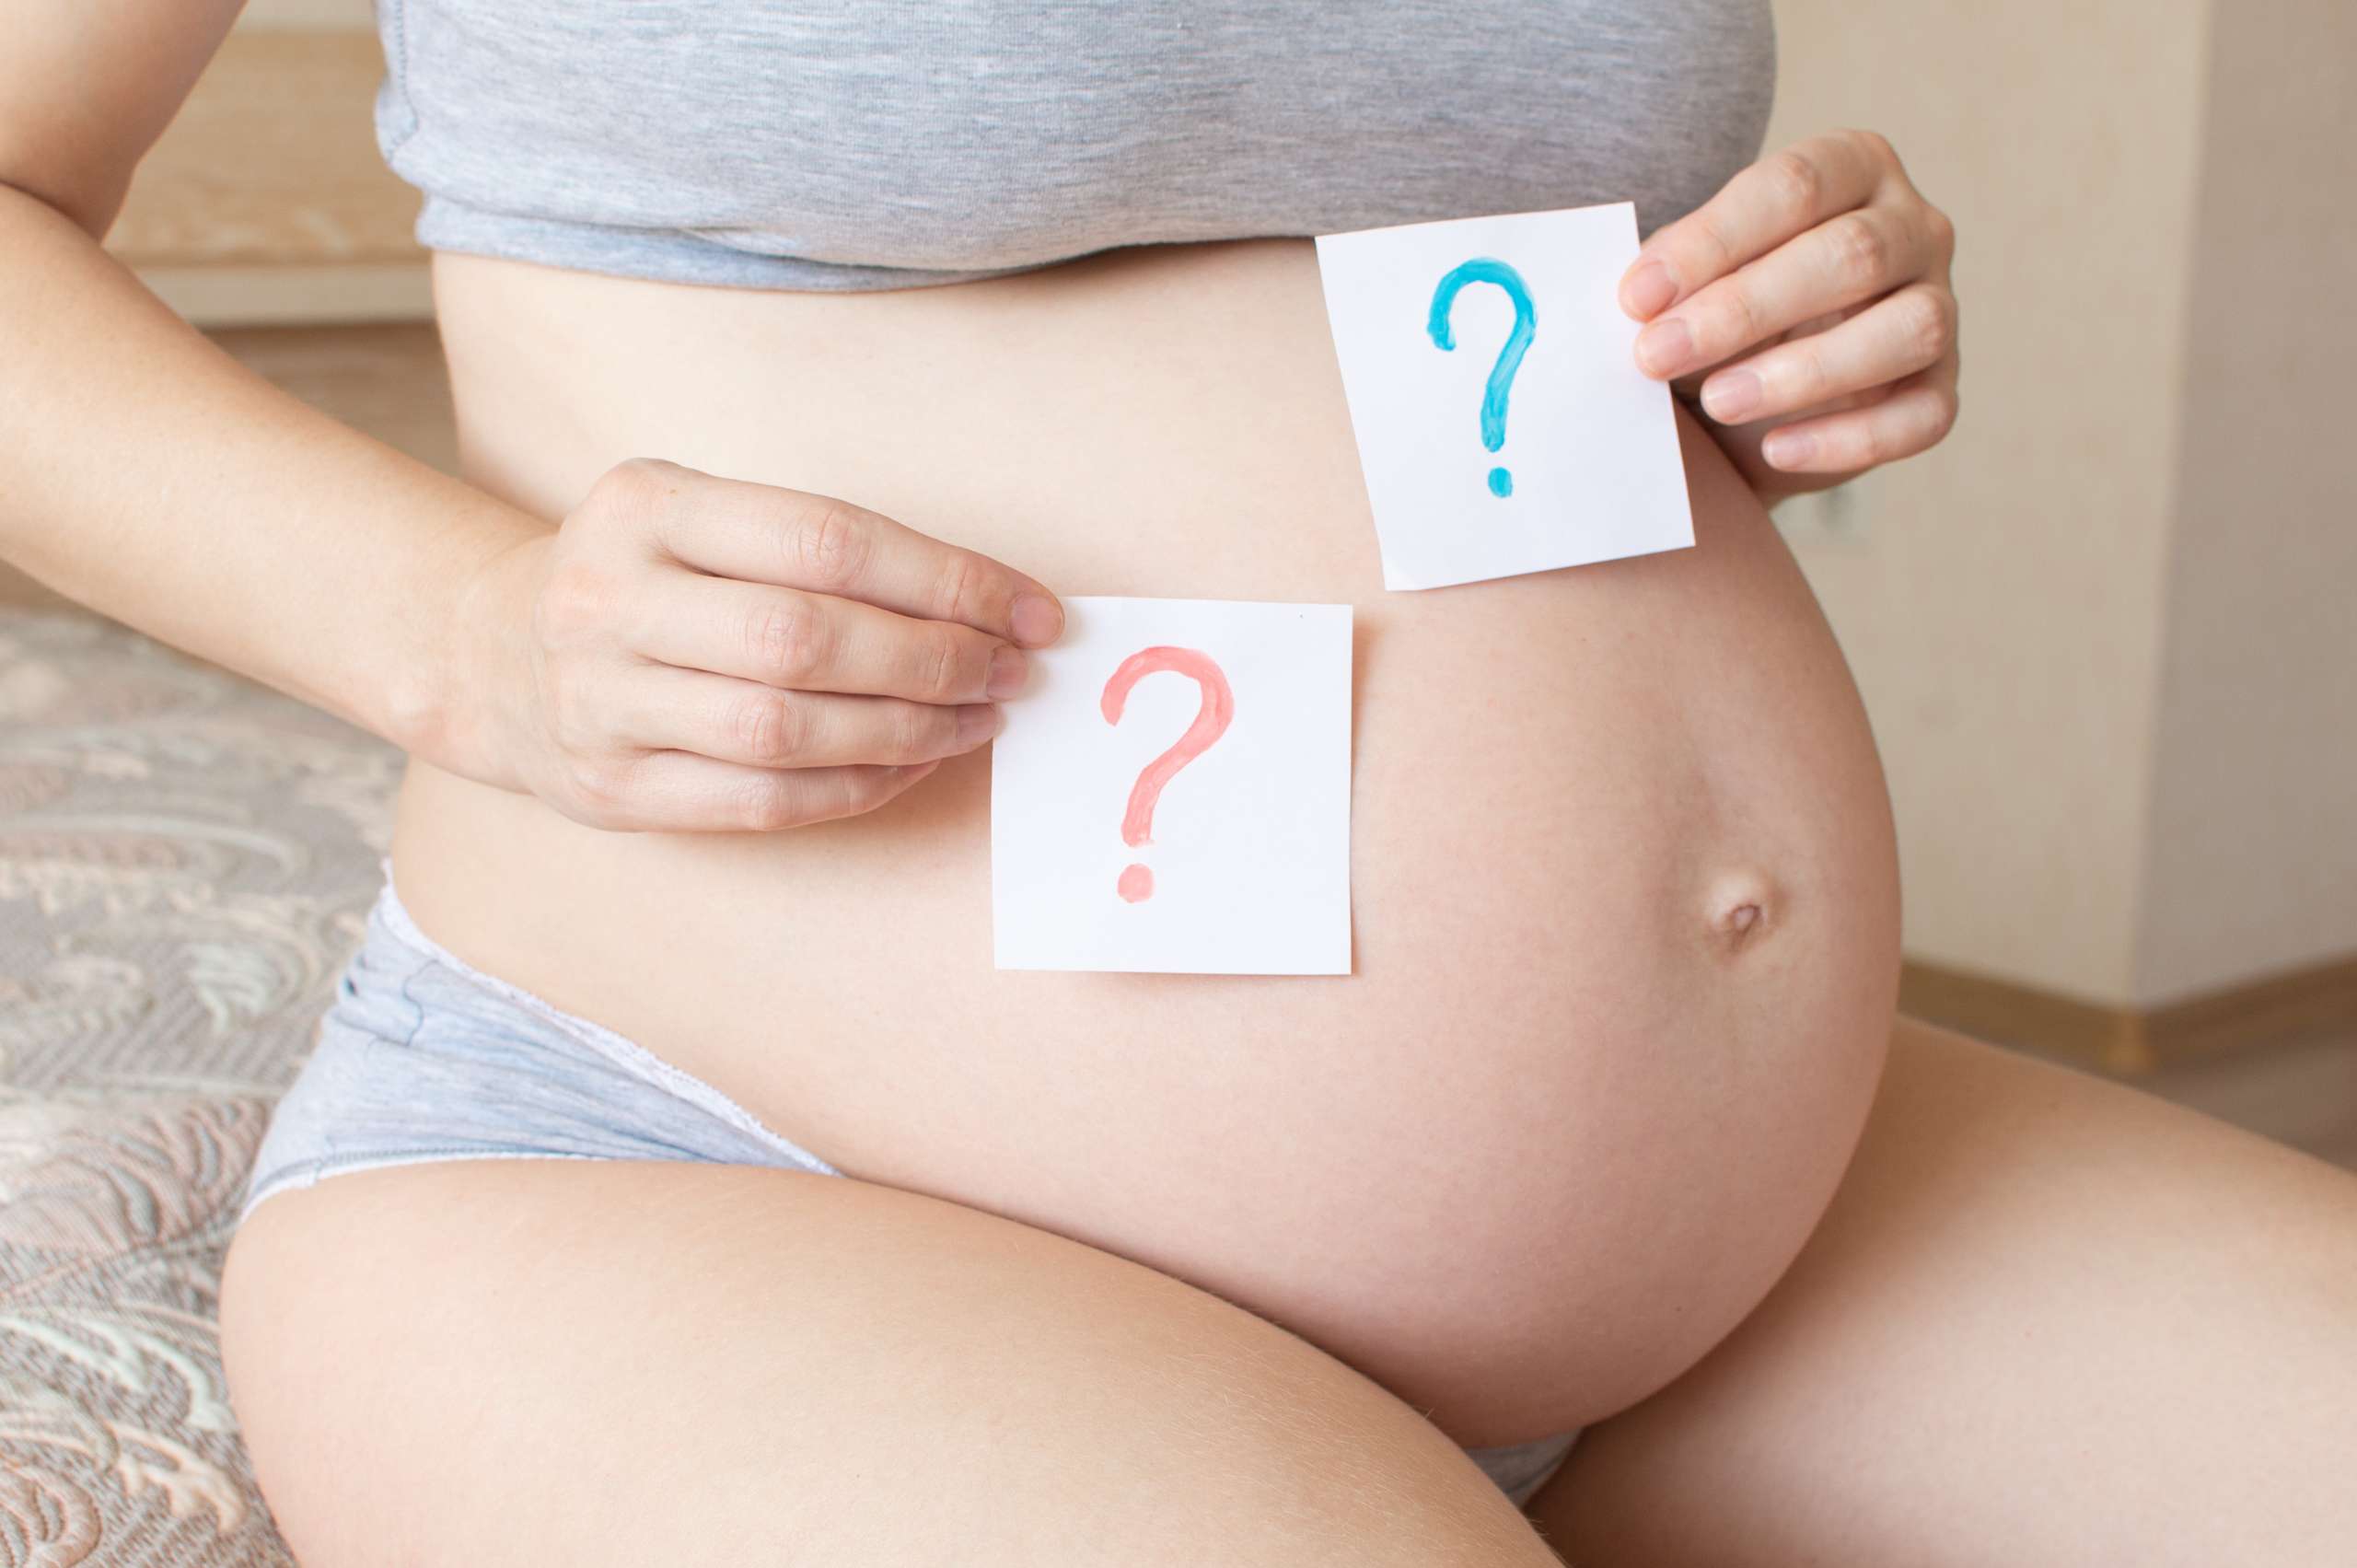 apa saja mitos ibu hamil tentang hamil anak perempuan